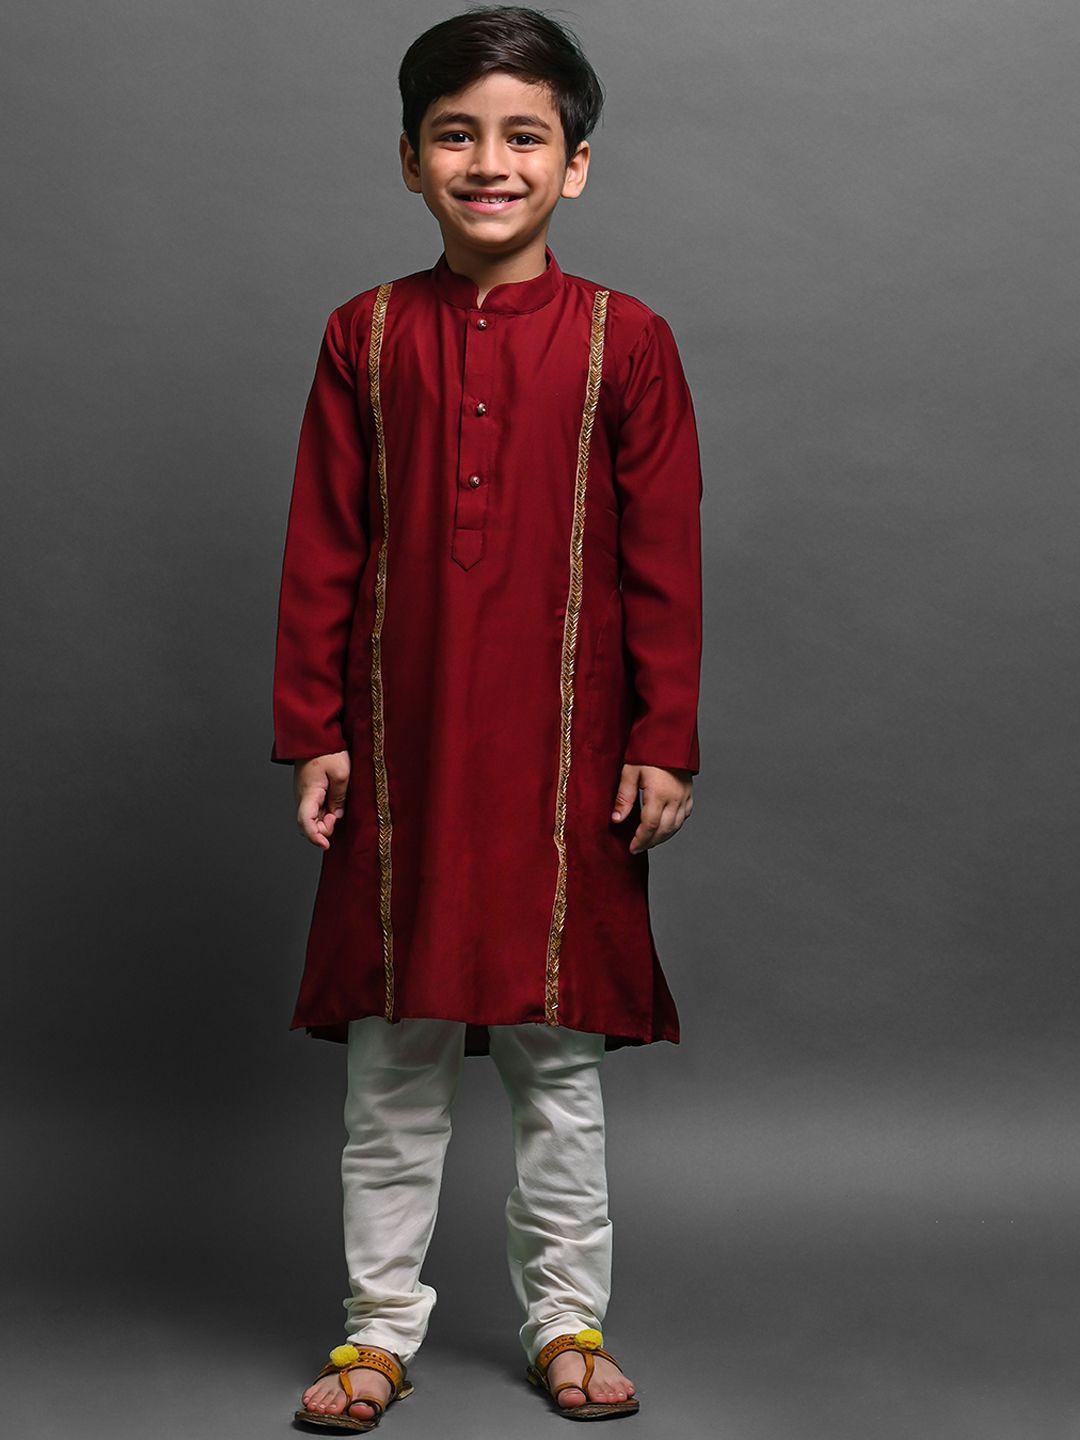 vesham boys embellished regular beads & stones kurta with pyjama